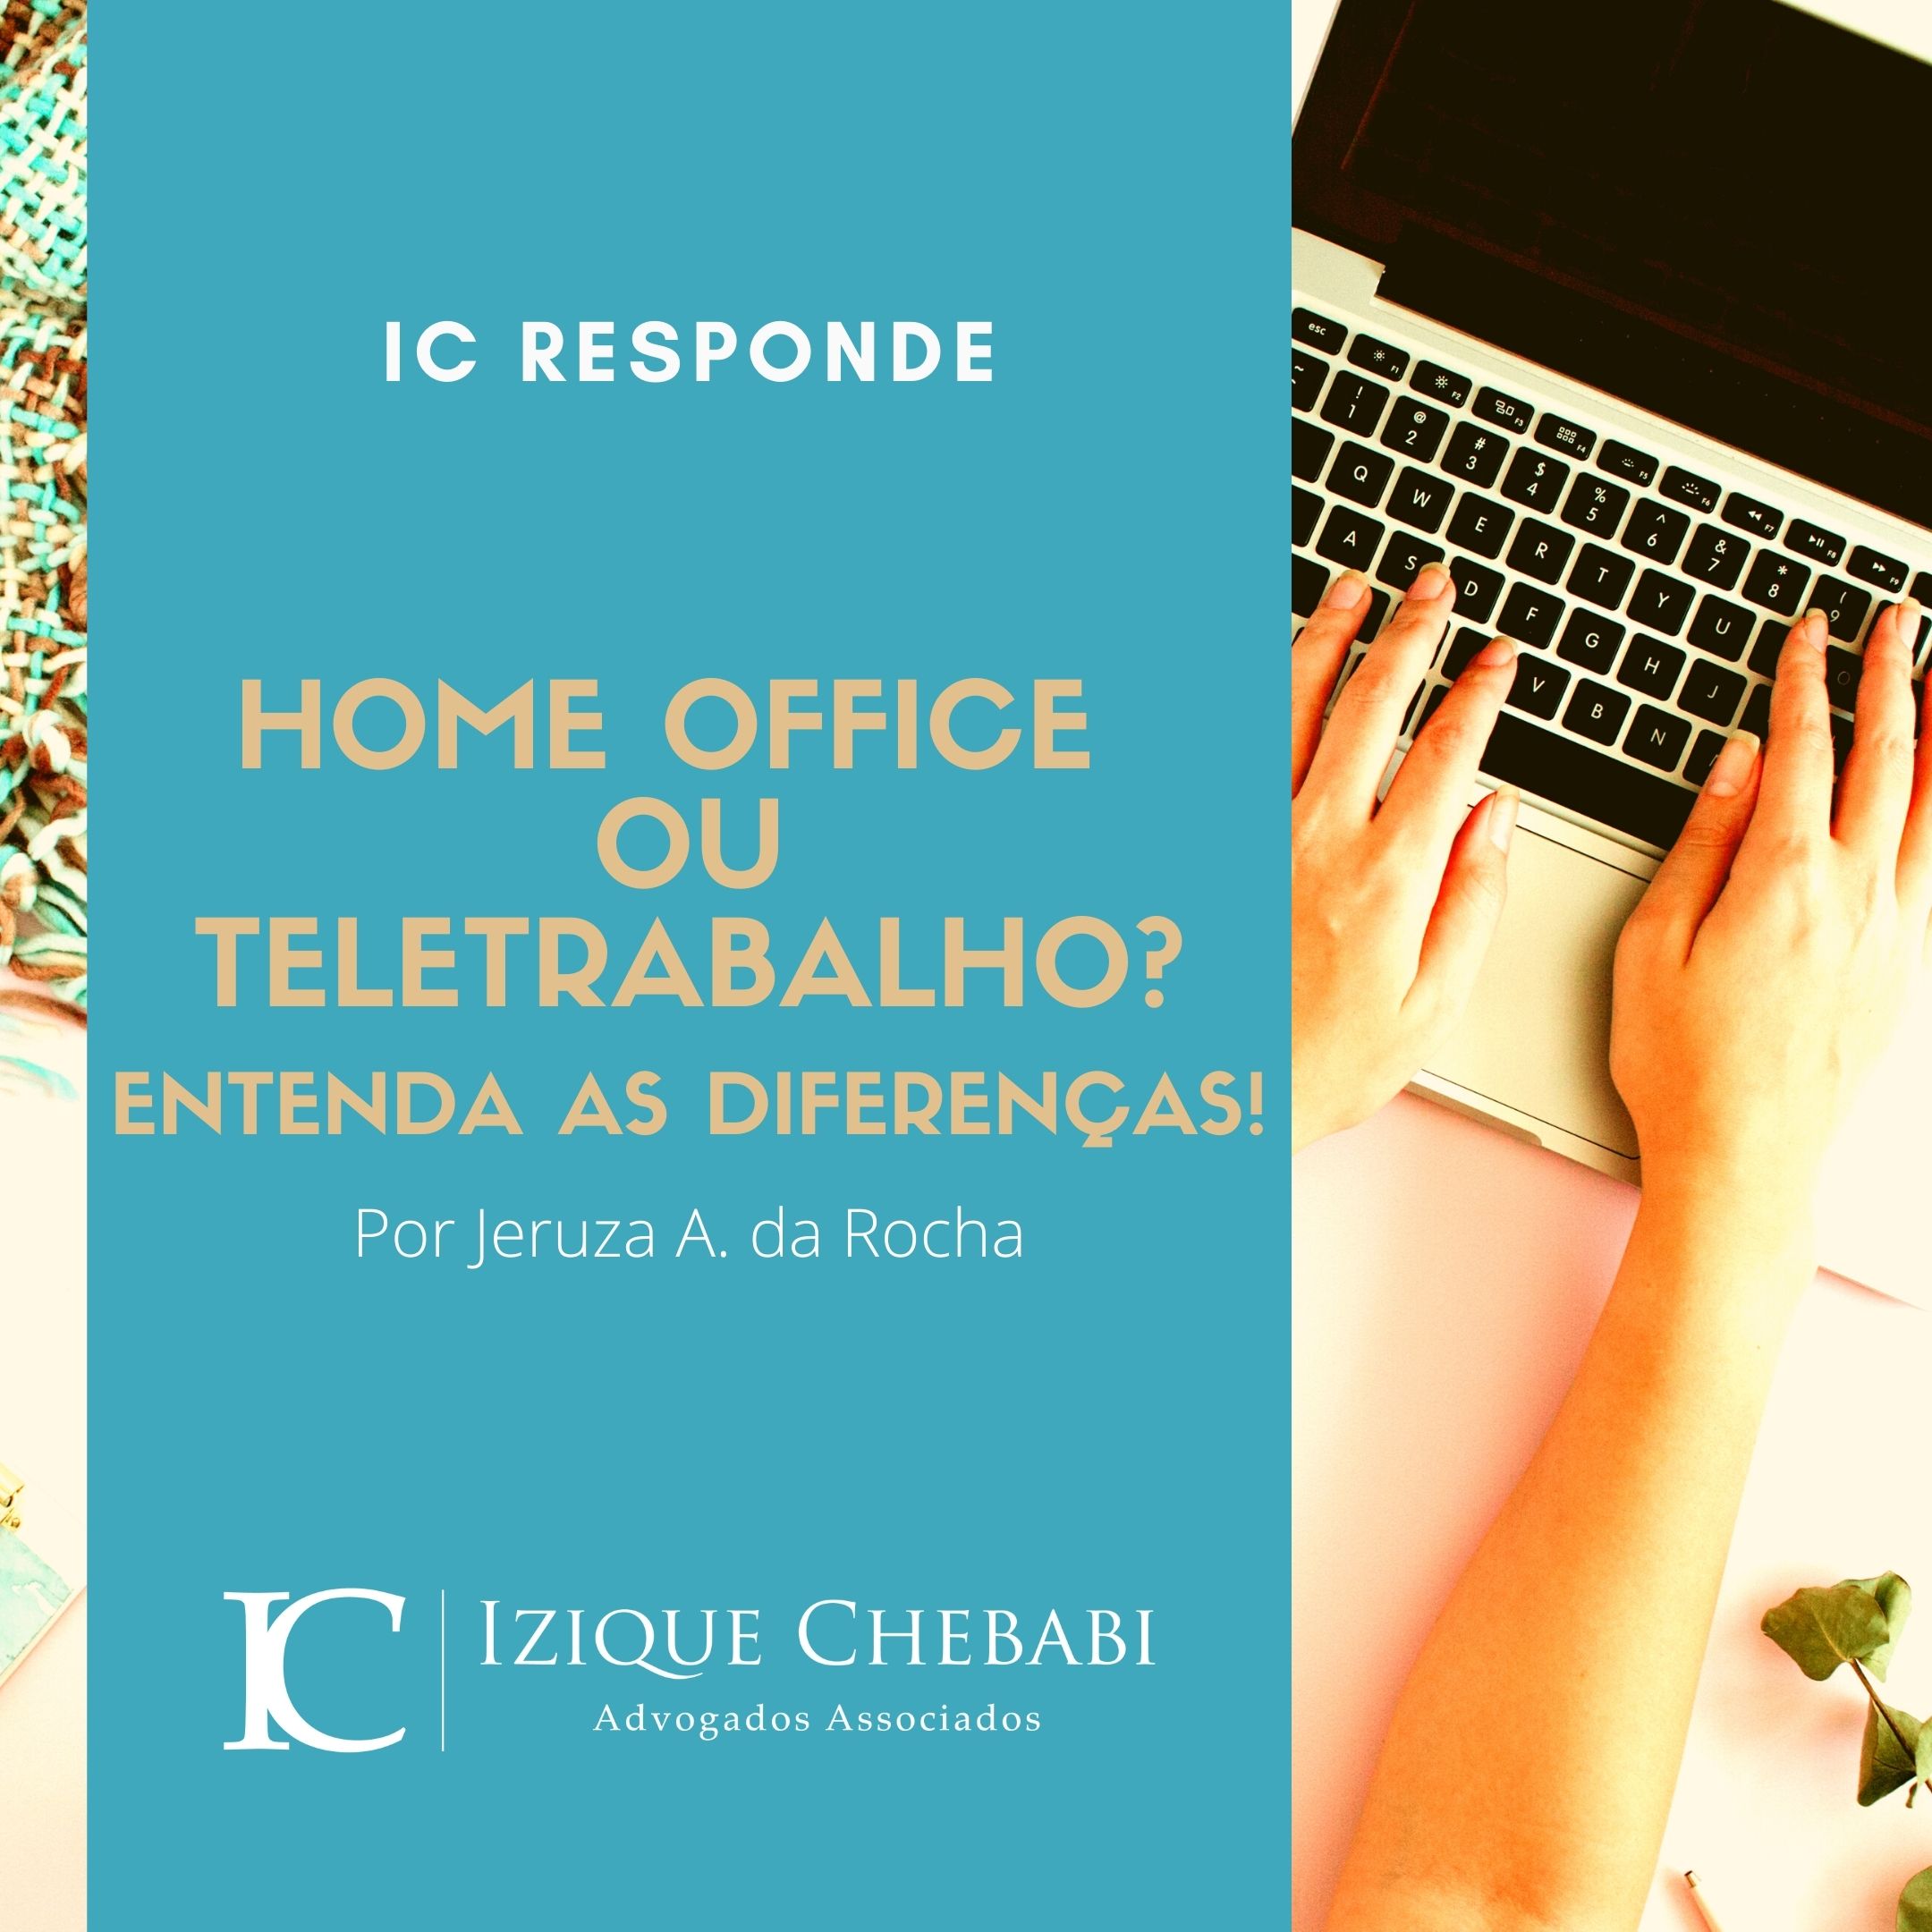 Home Office ou Teletrabalho: qual é a diferença? - Izique Chebabi Advogados  Associados